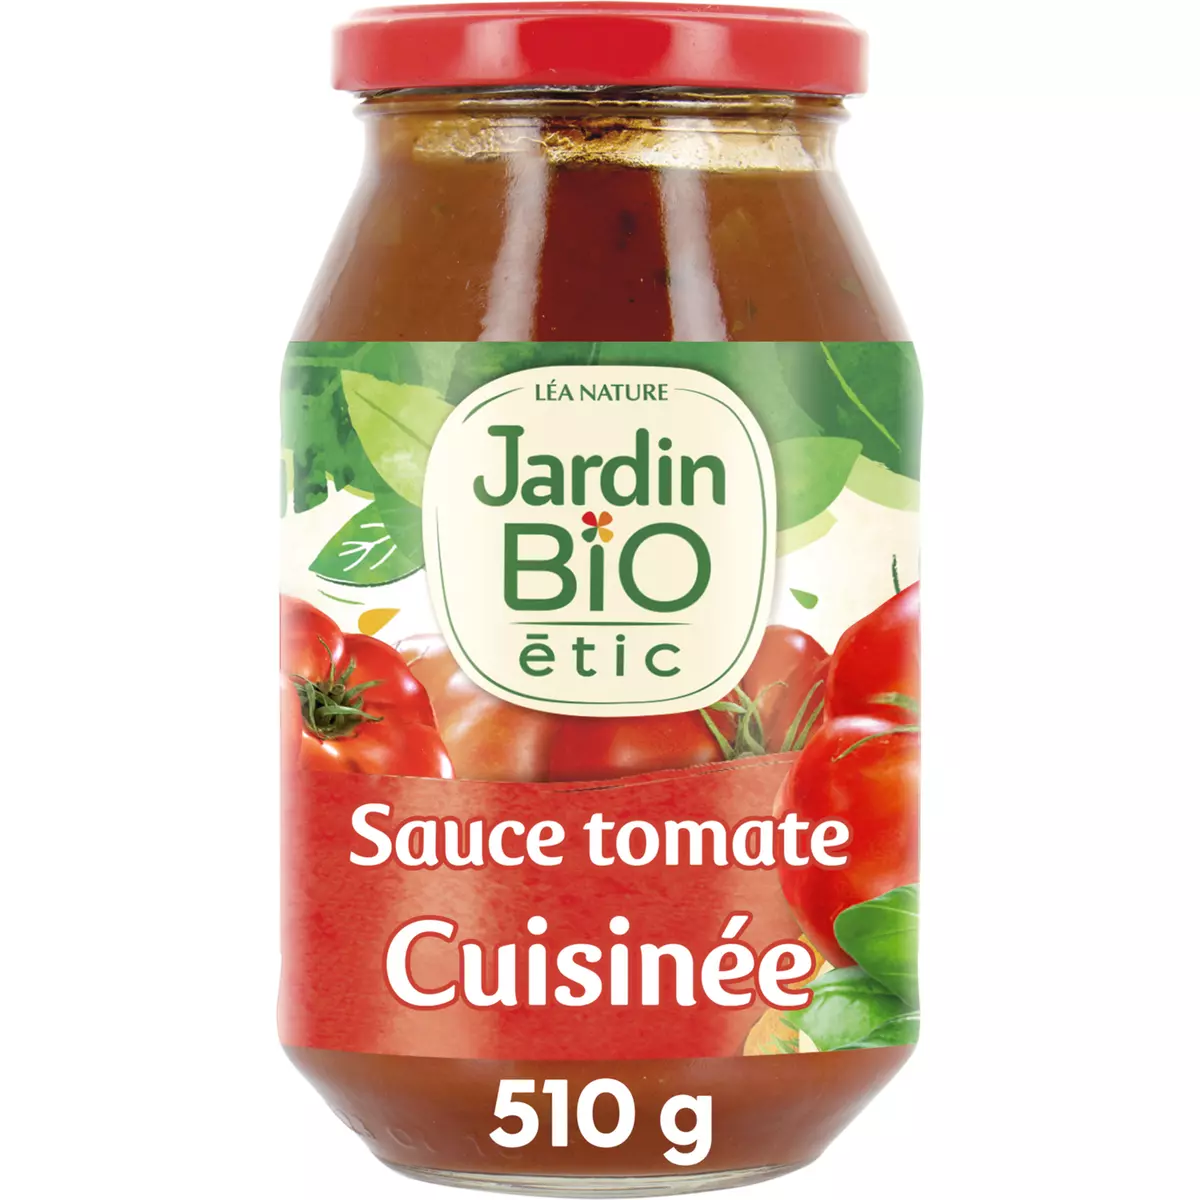 JARDIN BIO ETIC Sauce tomate cuisinée fabriqué en France en bocal 510g